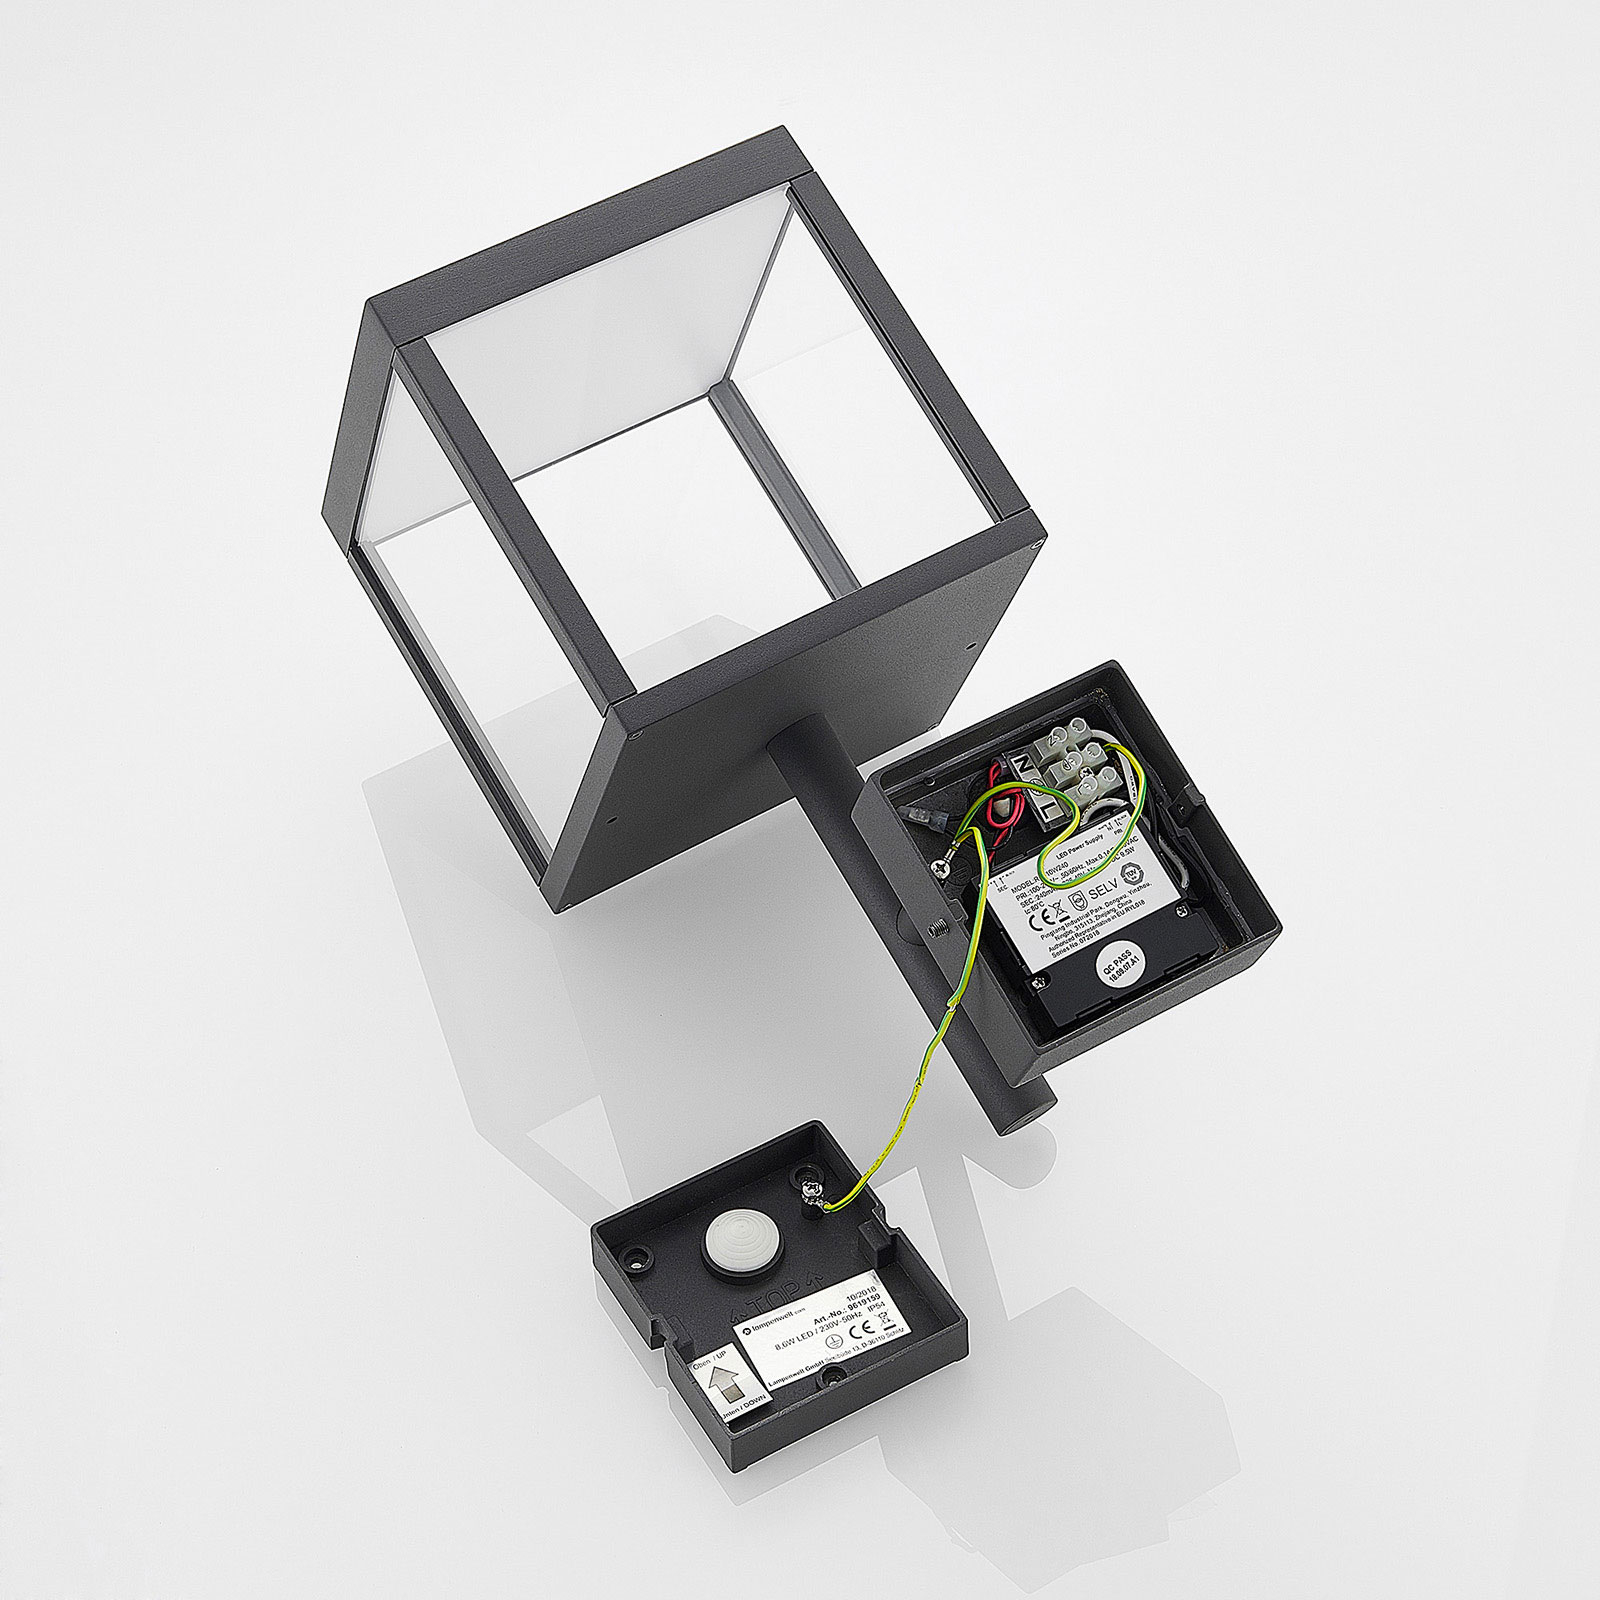 LED-Außenwandleuchte Cube mit Glasschirm, graphit